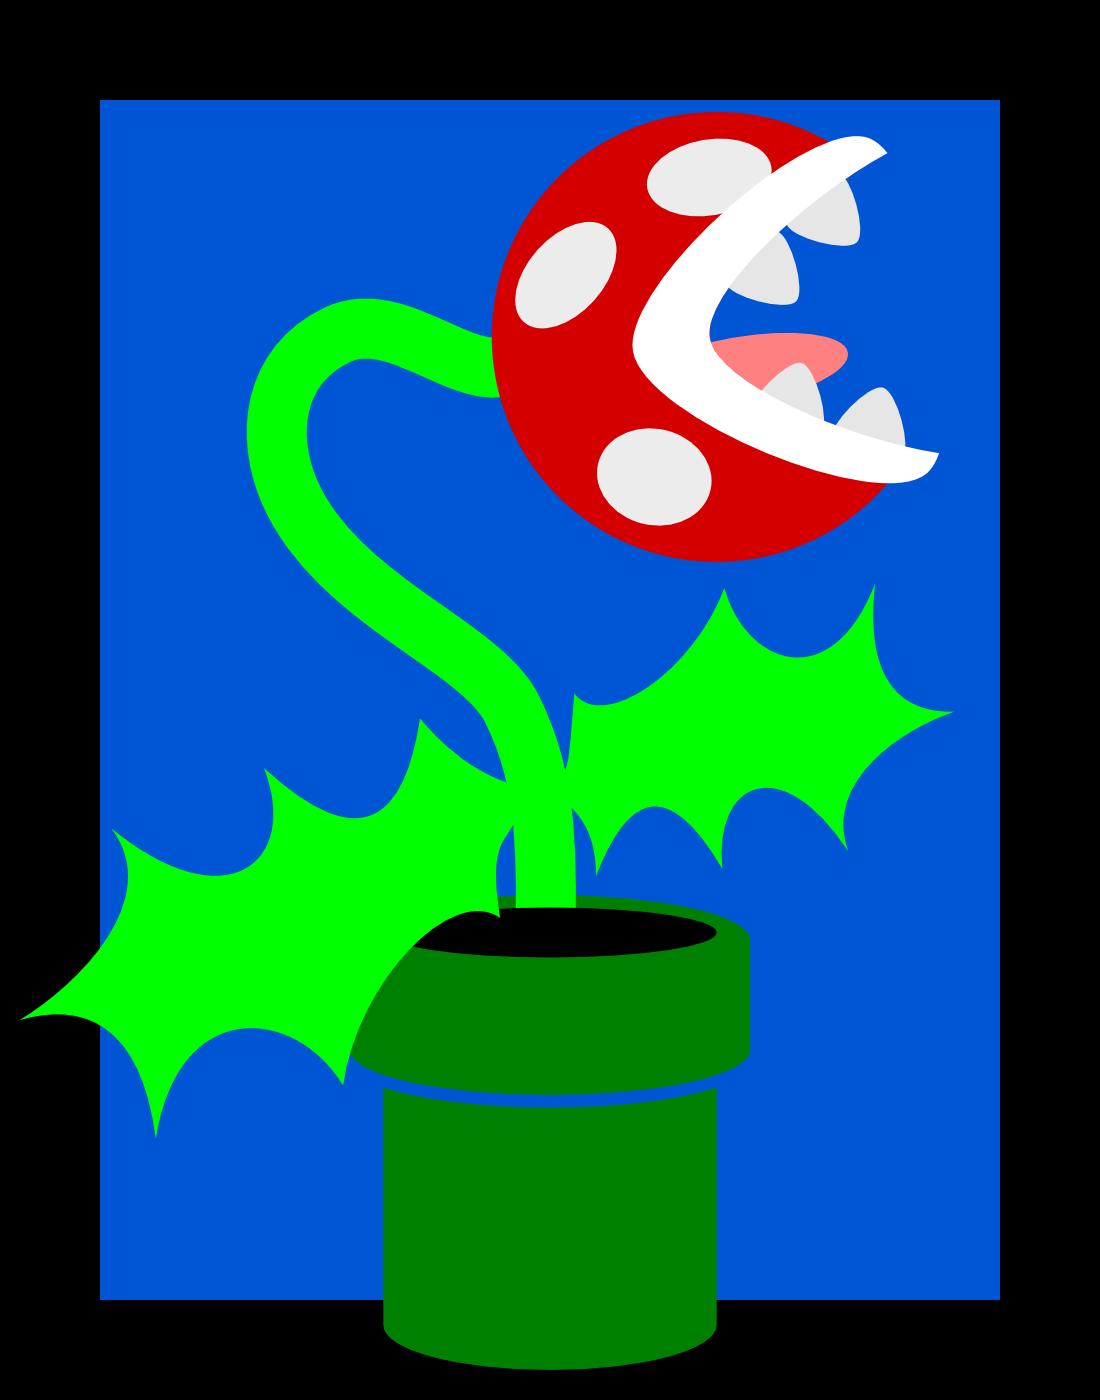 A piranha plant from Super Mario Bros